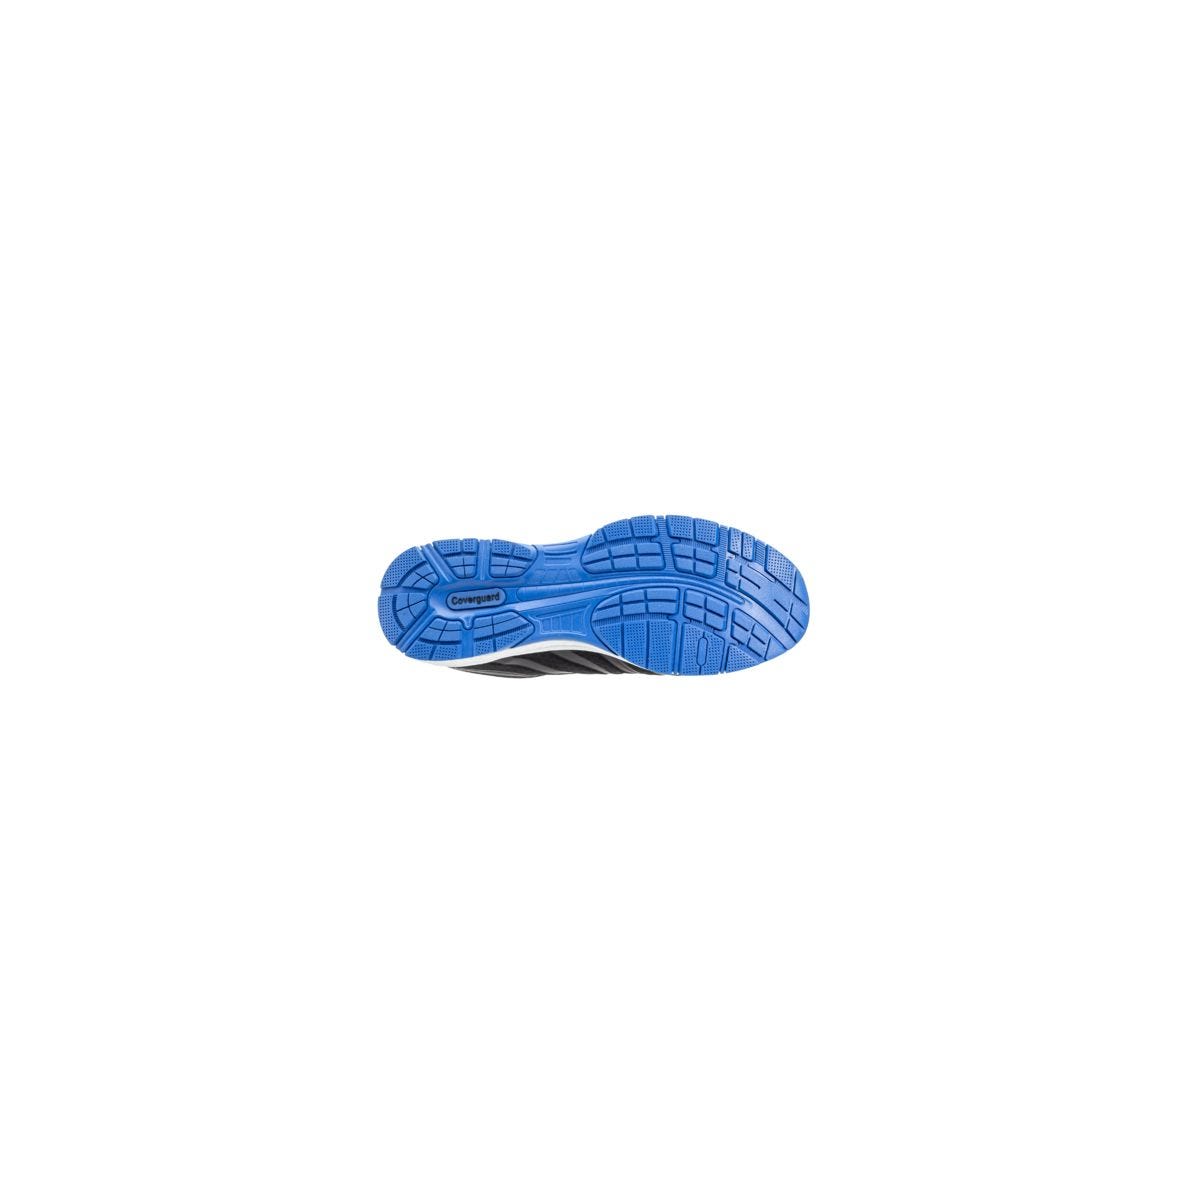 Chaussures de sécurité S1P GALAXITE Basse Maille Noir Bleu ESD - COVERGUARD - Taille 47 1